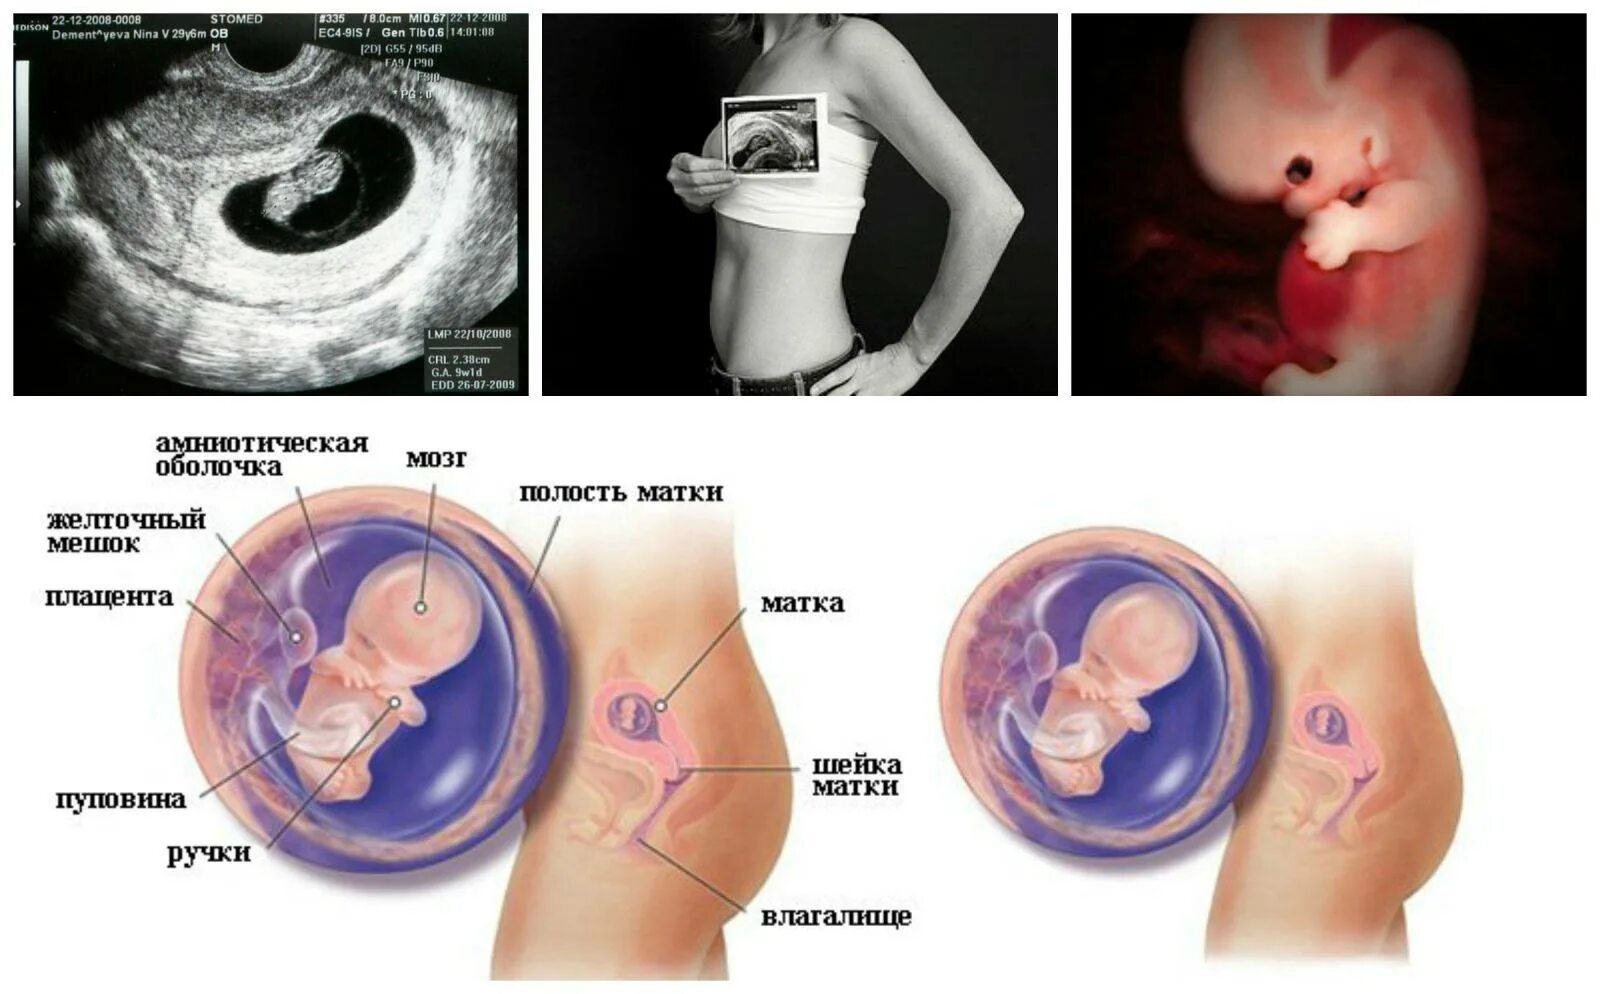 2 9 беременности. Эмбрион в 8-9 недель беременности. Плод ребенка на 8-9 неделе беременности. Как выглядит эмбрион ребёнка в 9 недель. 8-9 Недель беременности размер плода.